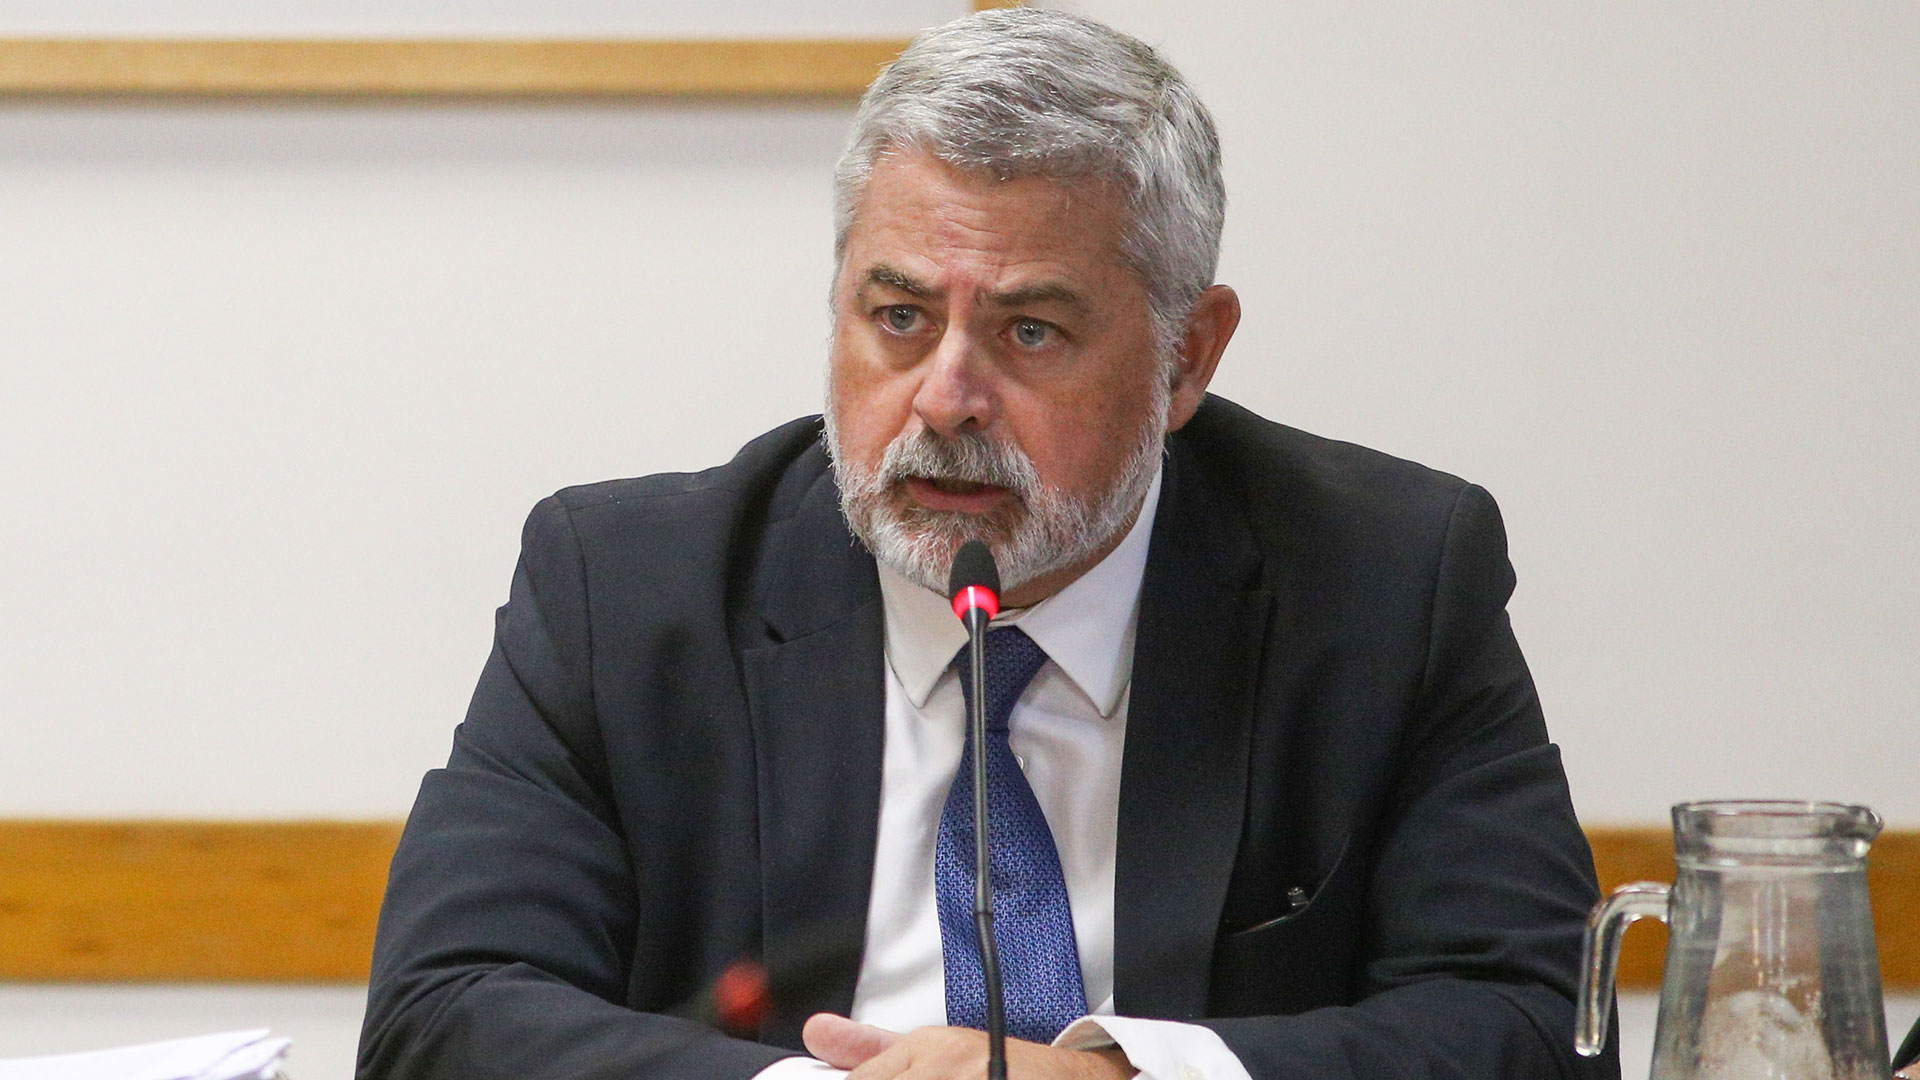 Juicio político a la Corte: desestimaron la denuncia por falso testimonio contra el juez Sebastián Ramos